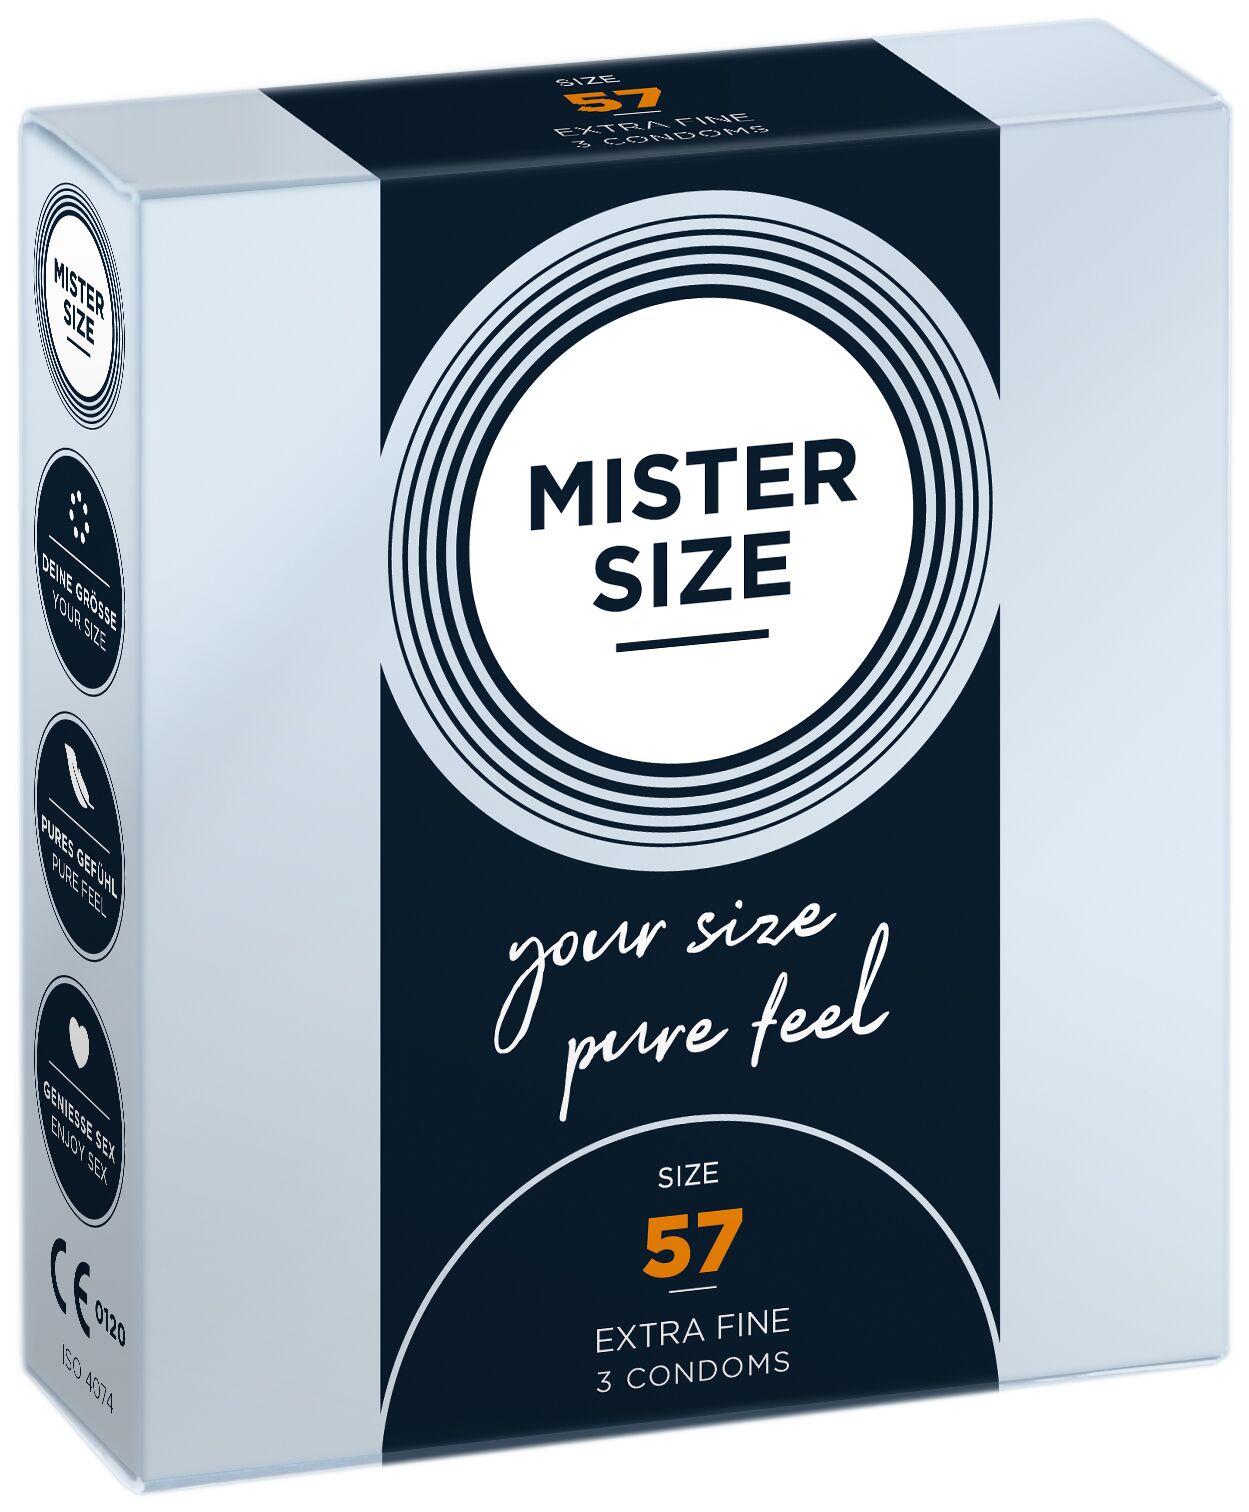 Презервативи Mister Size - pure feel - 57 (3 condoms), товщина 0,05 мм